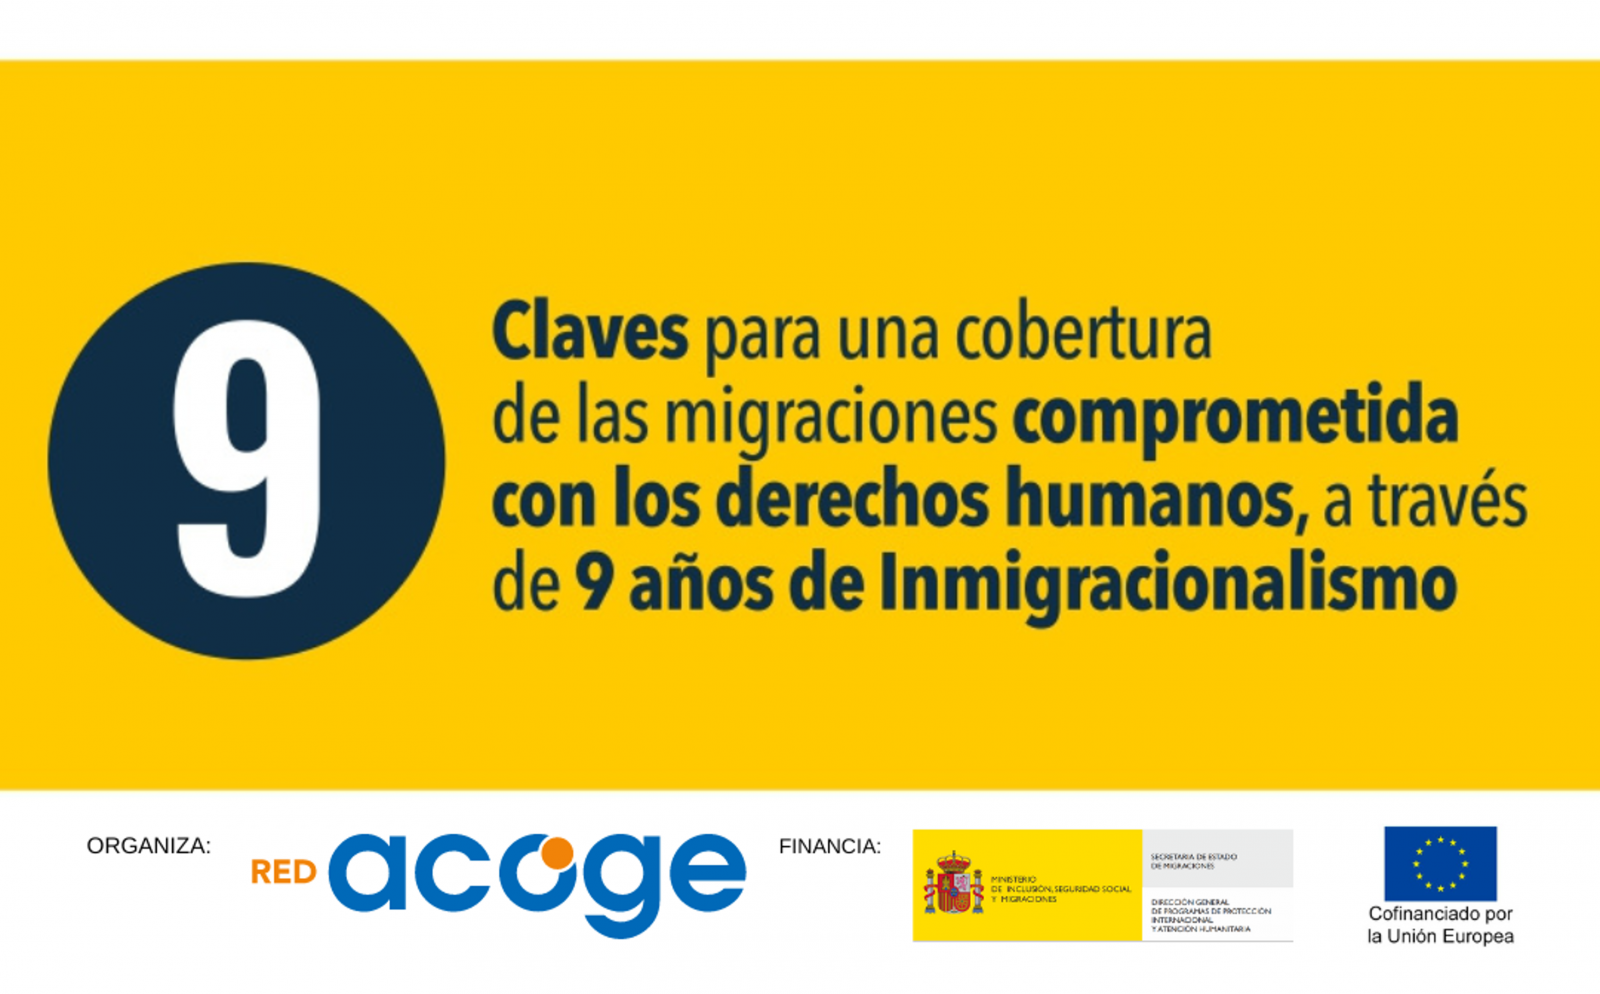 "9 claves por 9 años de #Inmigracionalismo"